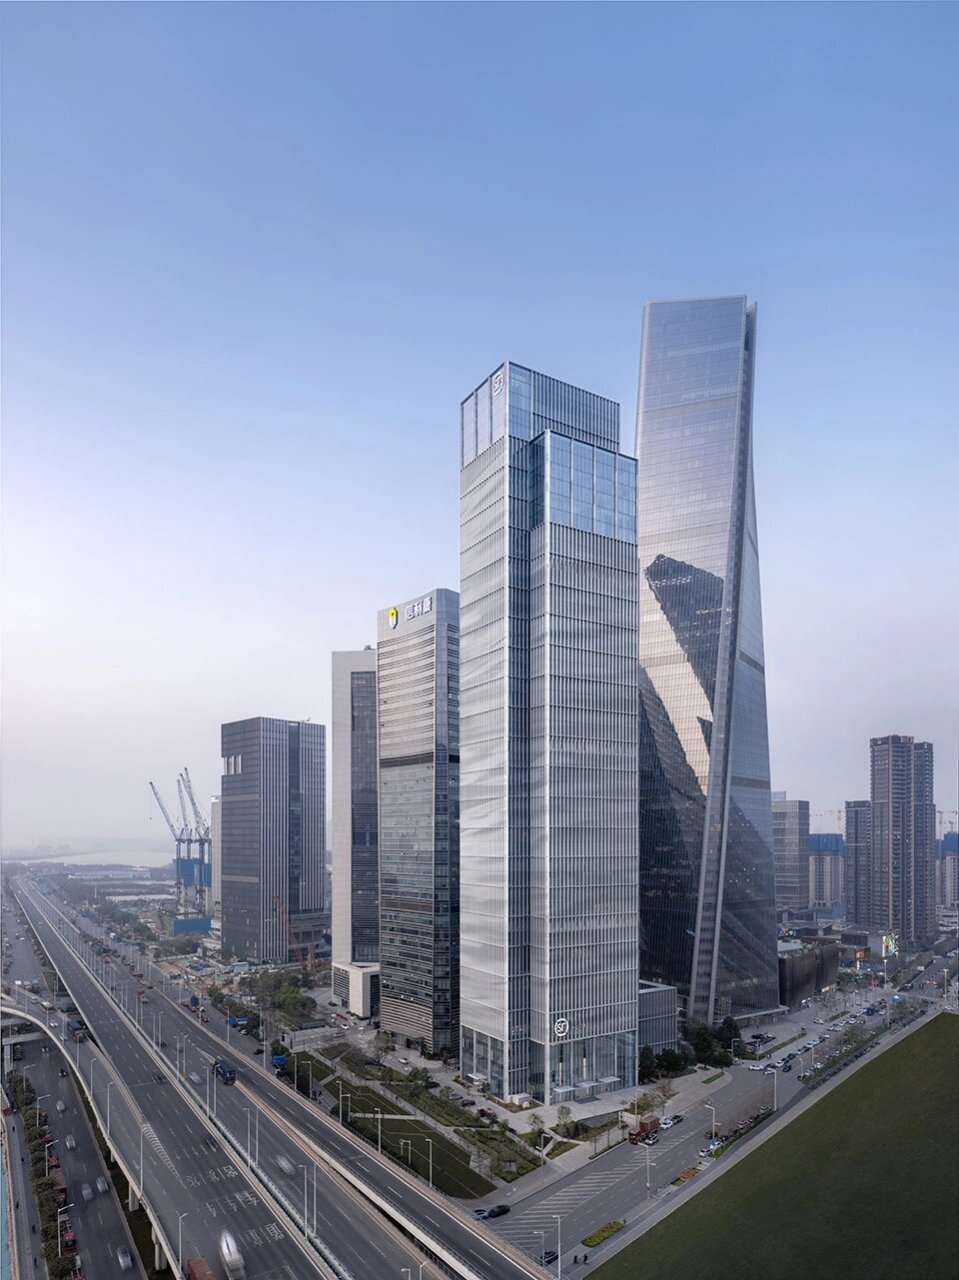 中国深圳/顺丰总部大厦 96大厦主体塔楼高200余米,四个附加体量错落